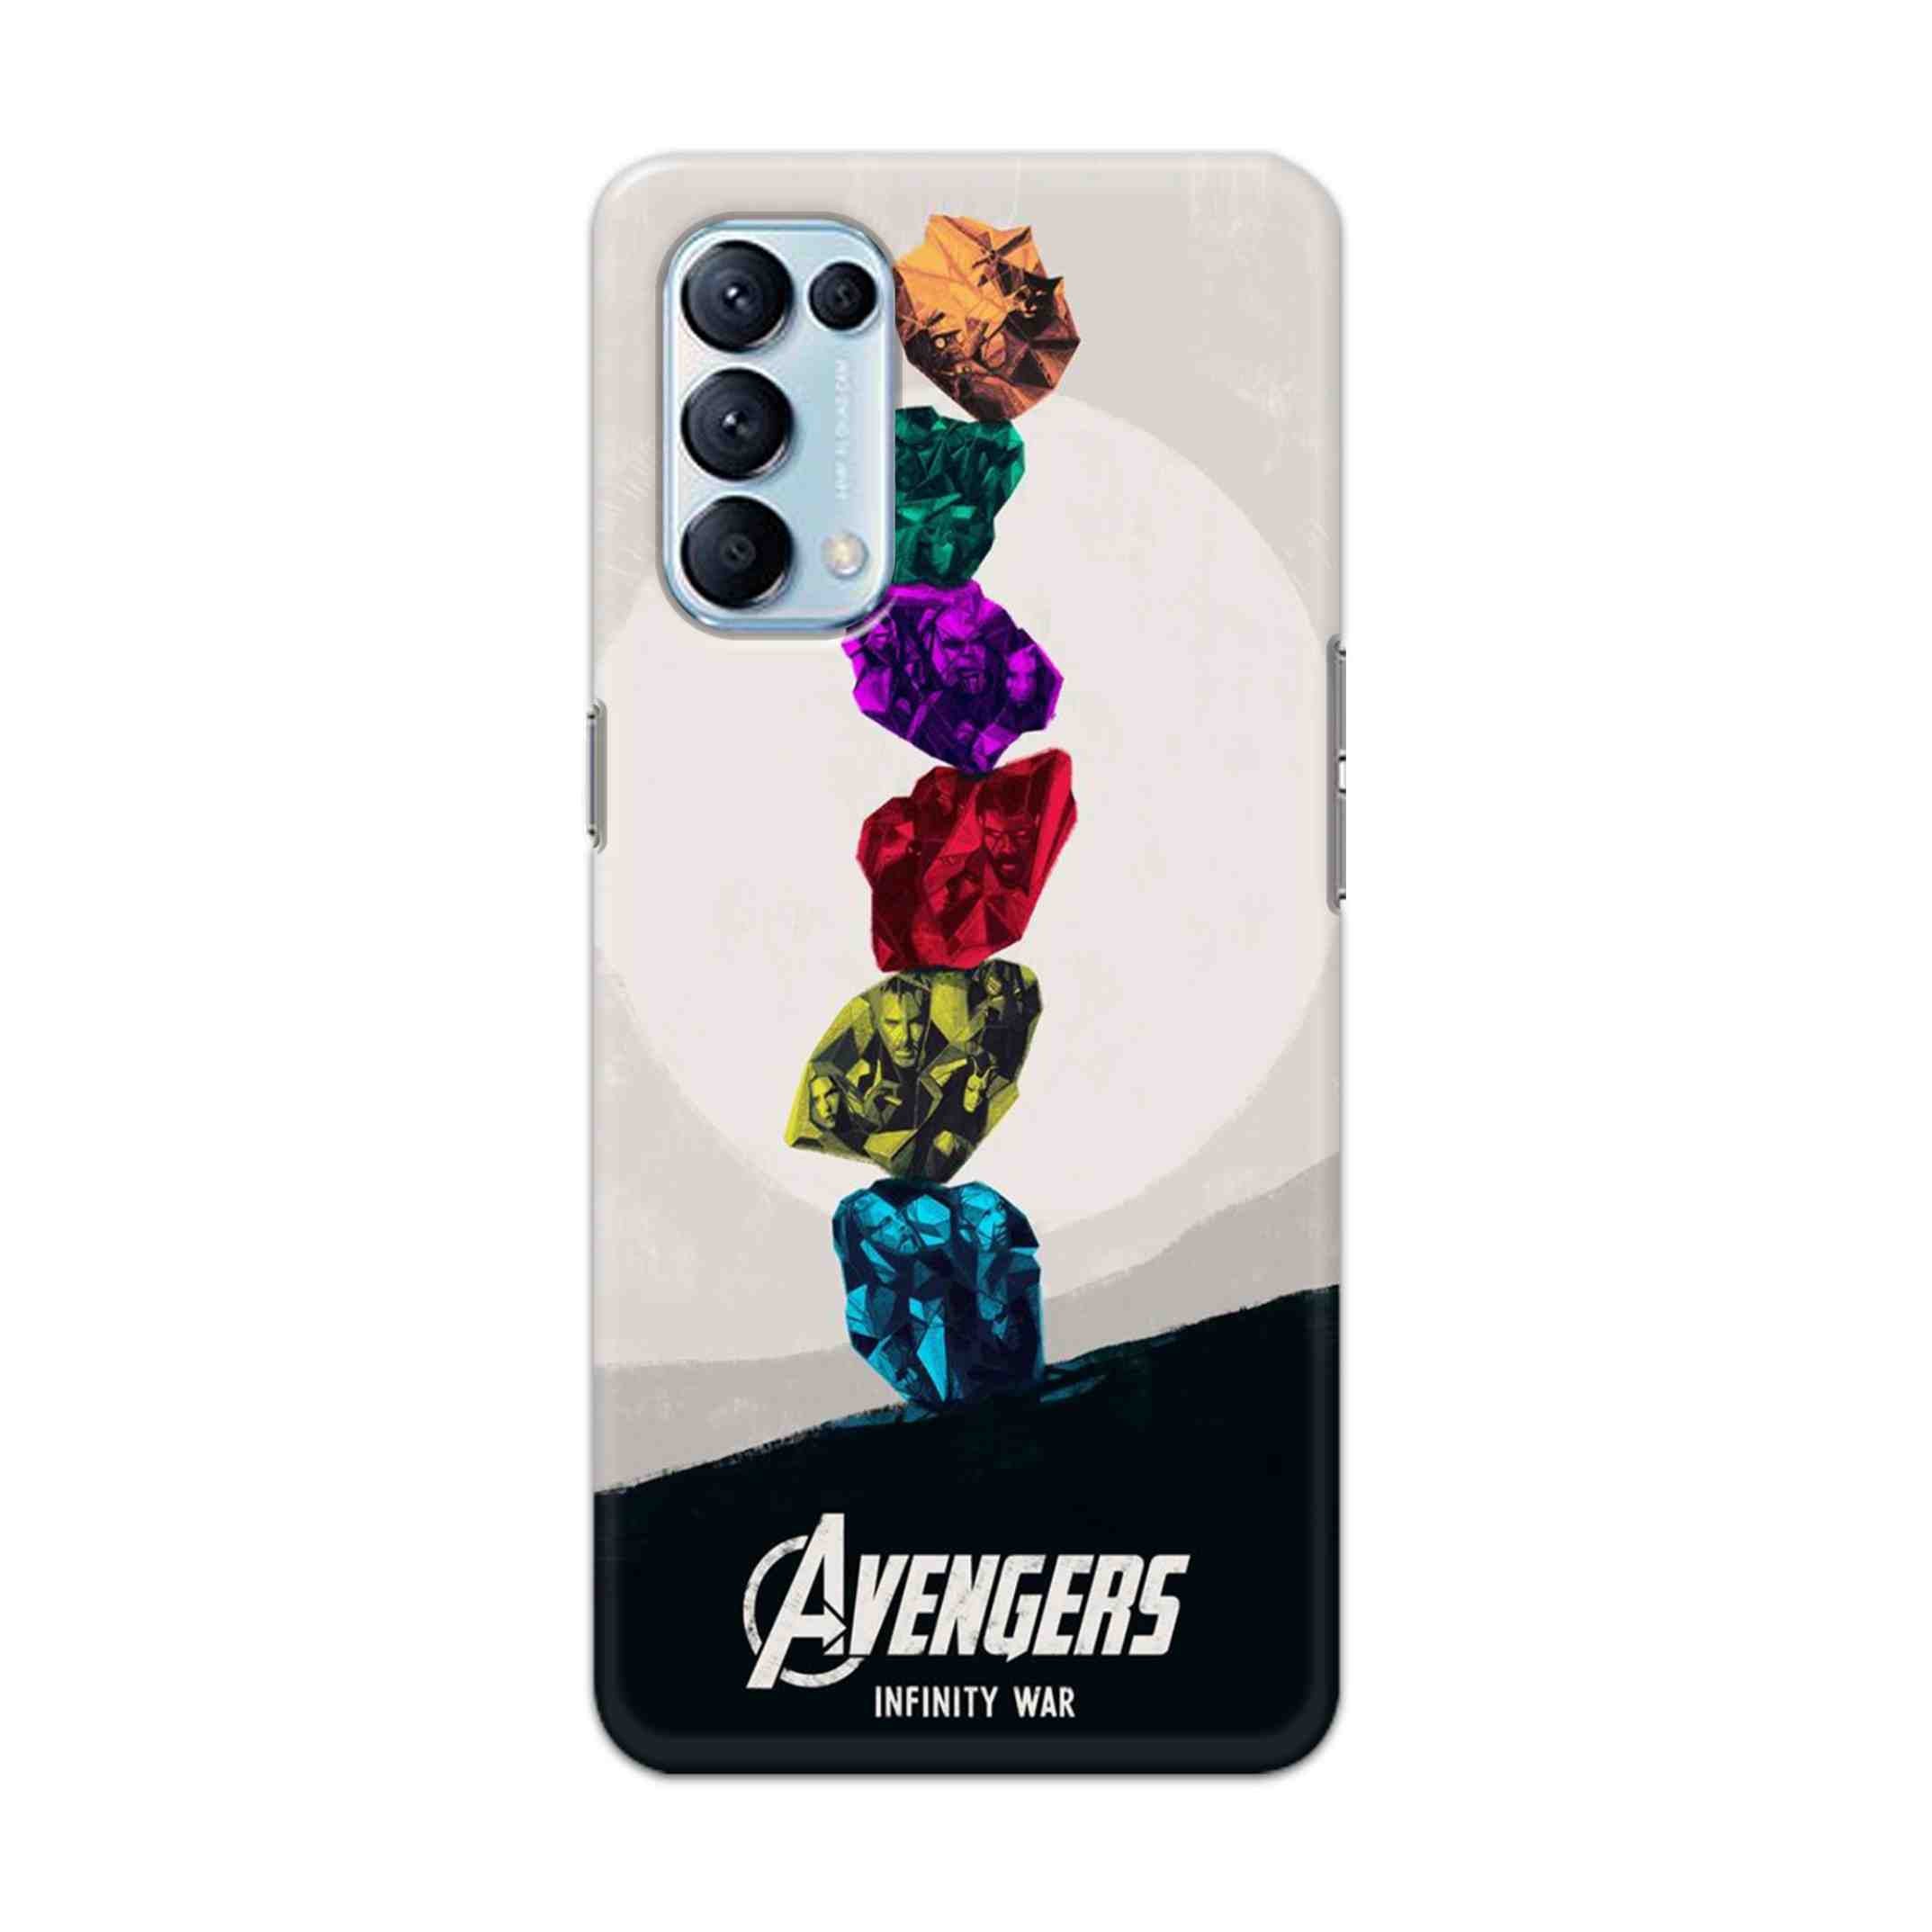 Buy Avengers Stone Hard Back Mobile Phone Case Cover For Oppo Reno 5 Pro 5G Online